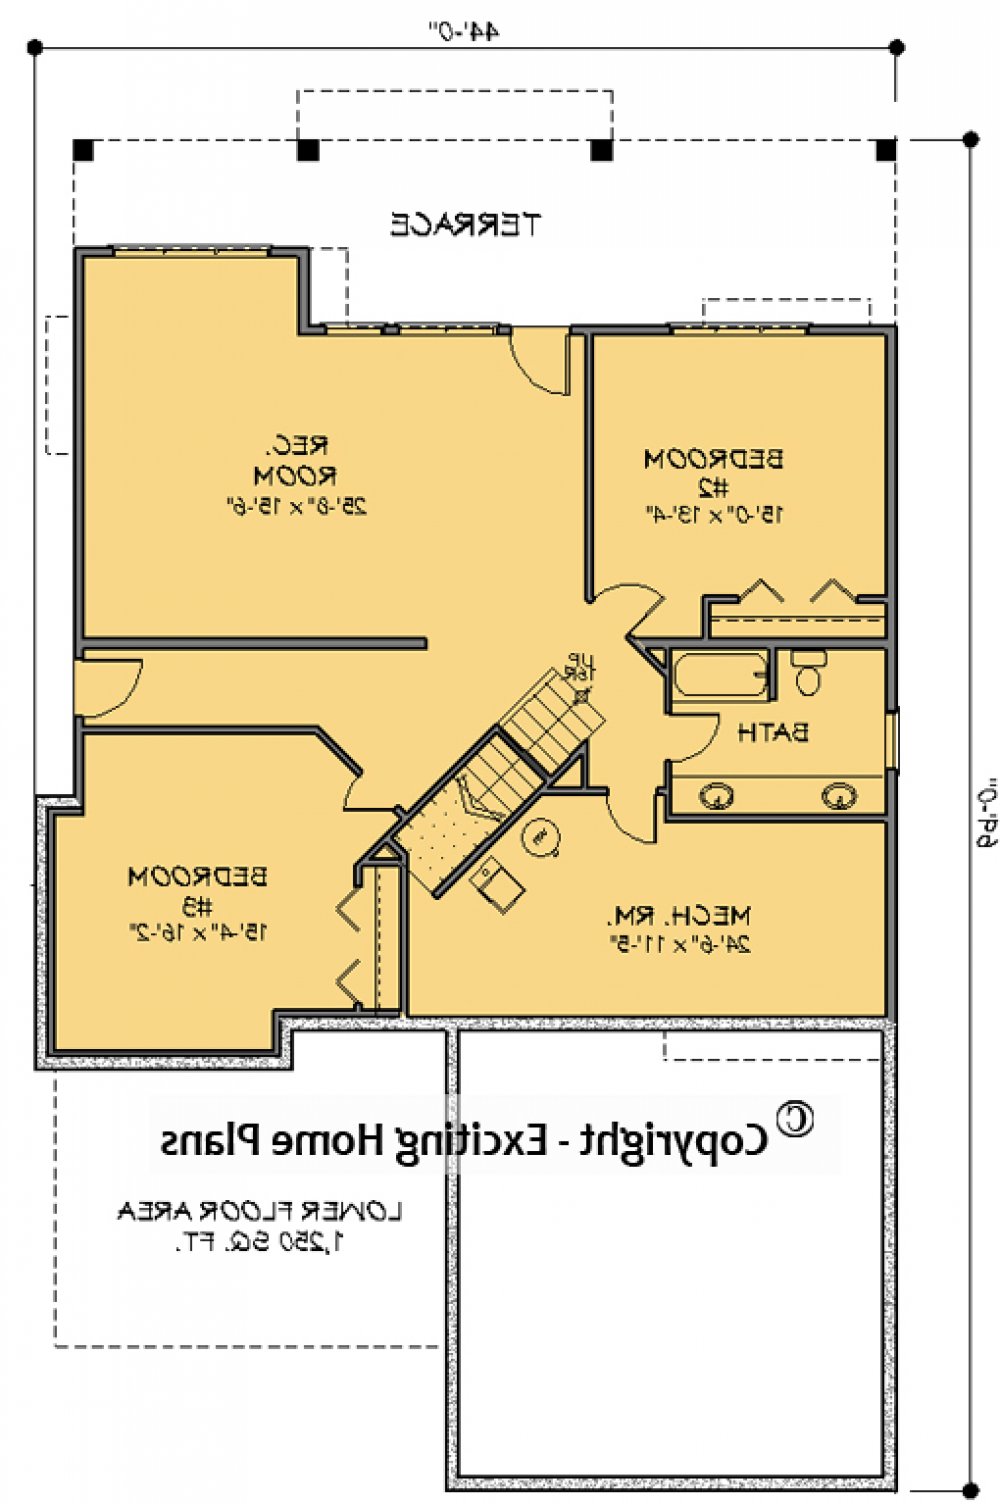 House Plan E1678-10 Lower Floor Plan REVERSE